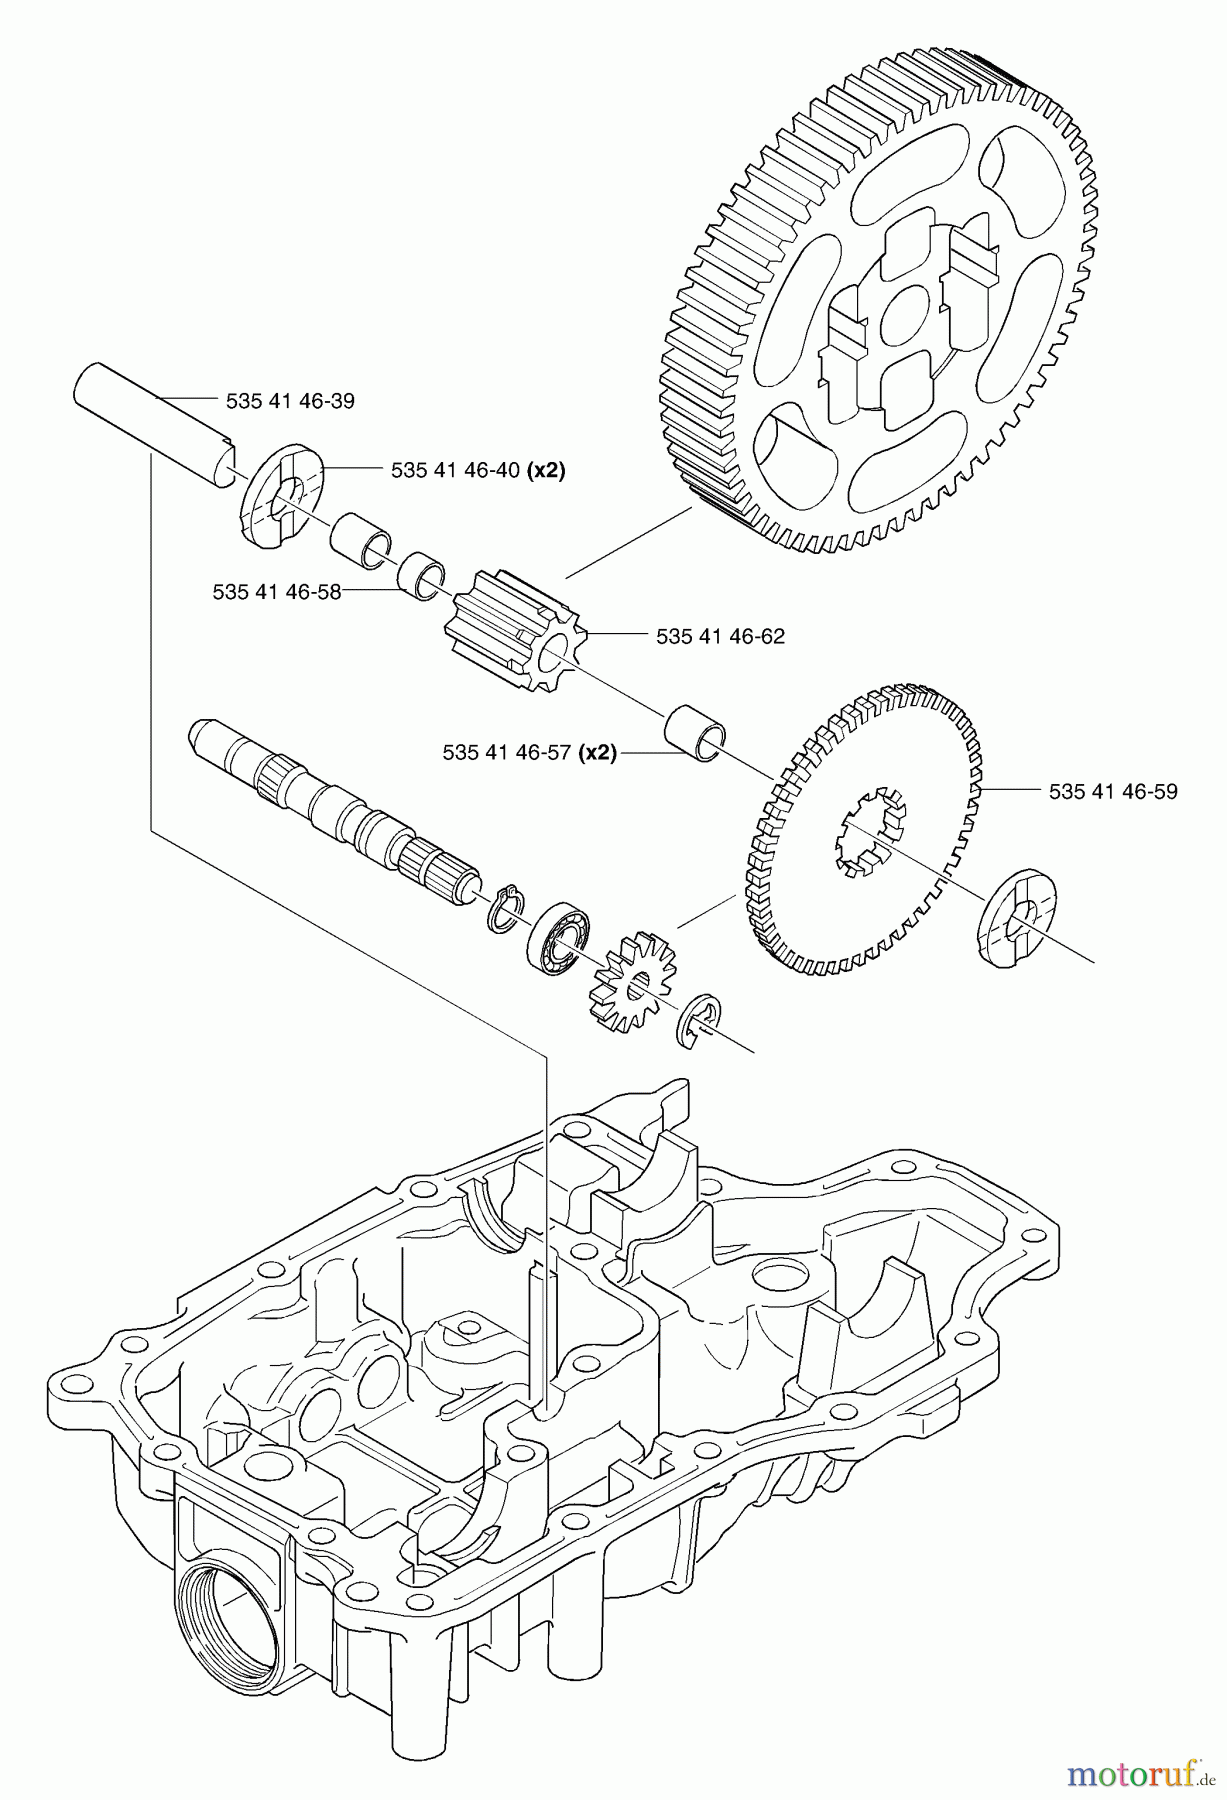  Husqvarna Motoren K 66 - Tuff Torq Transmission (2002-06 & After) Differential (Lower)